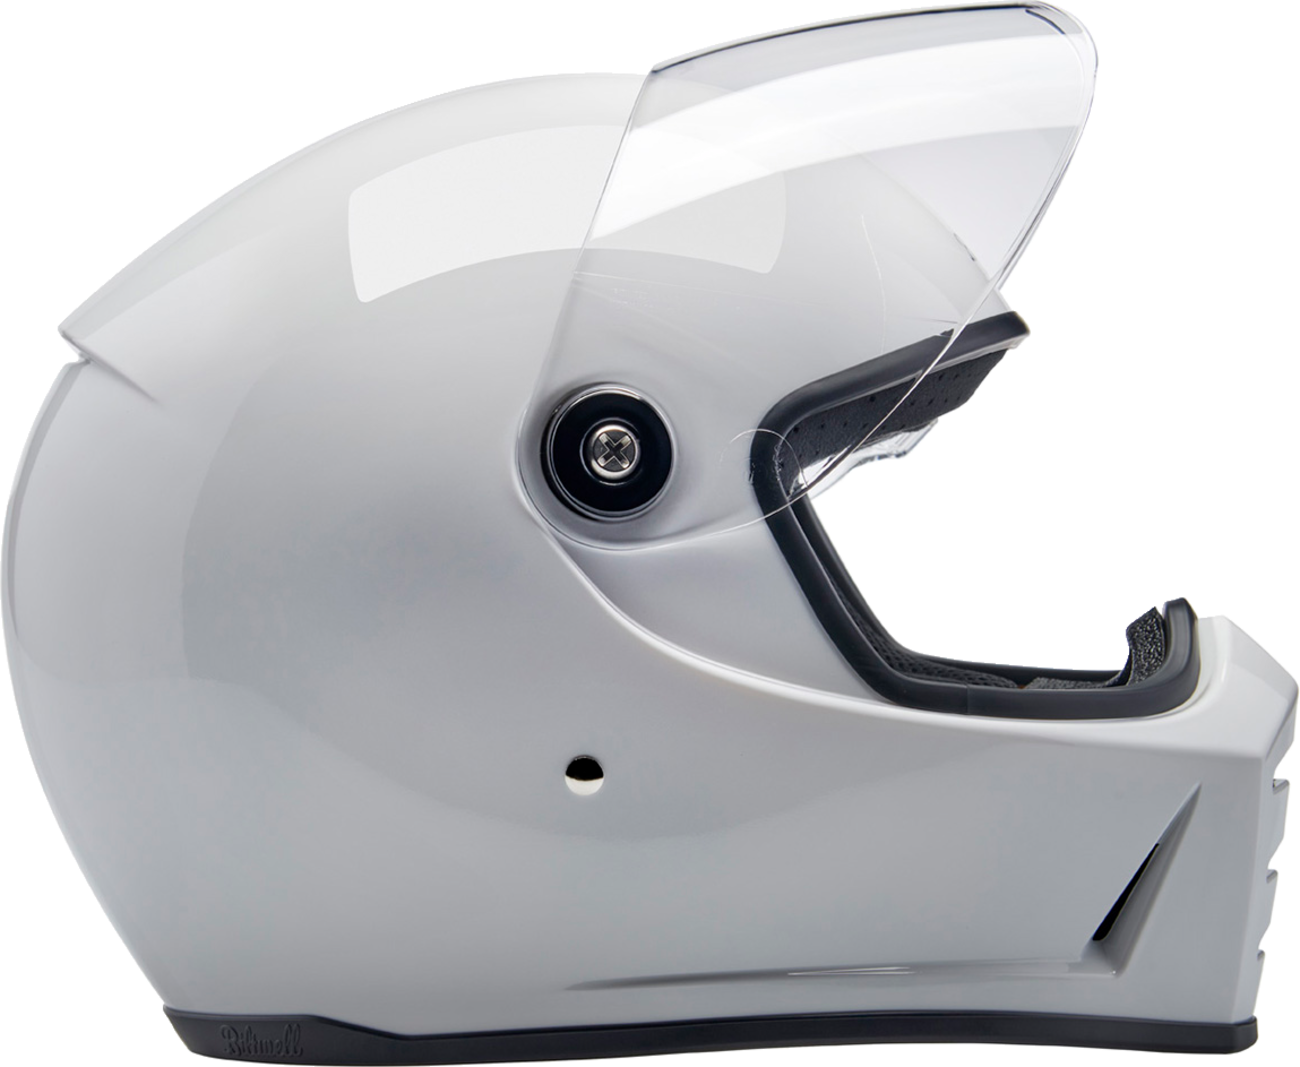 BILTWELL Lane Splitter Helmet - Gloss White - Small 1004-104-502